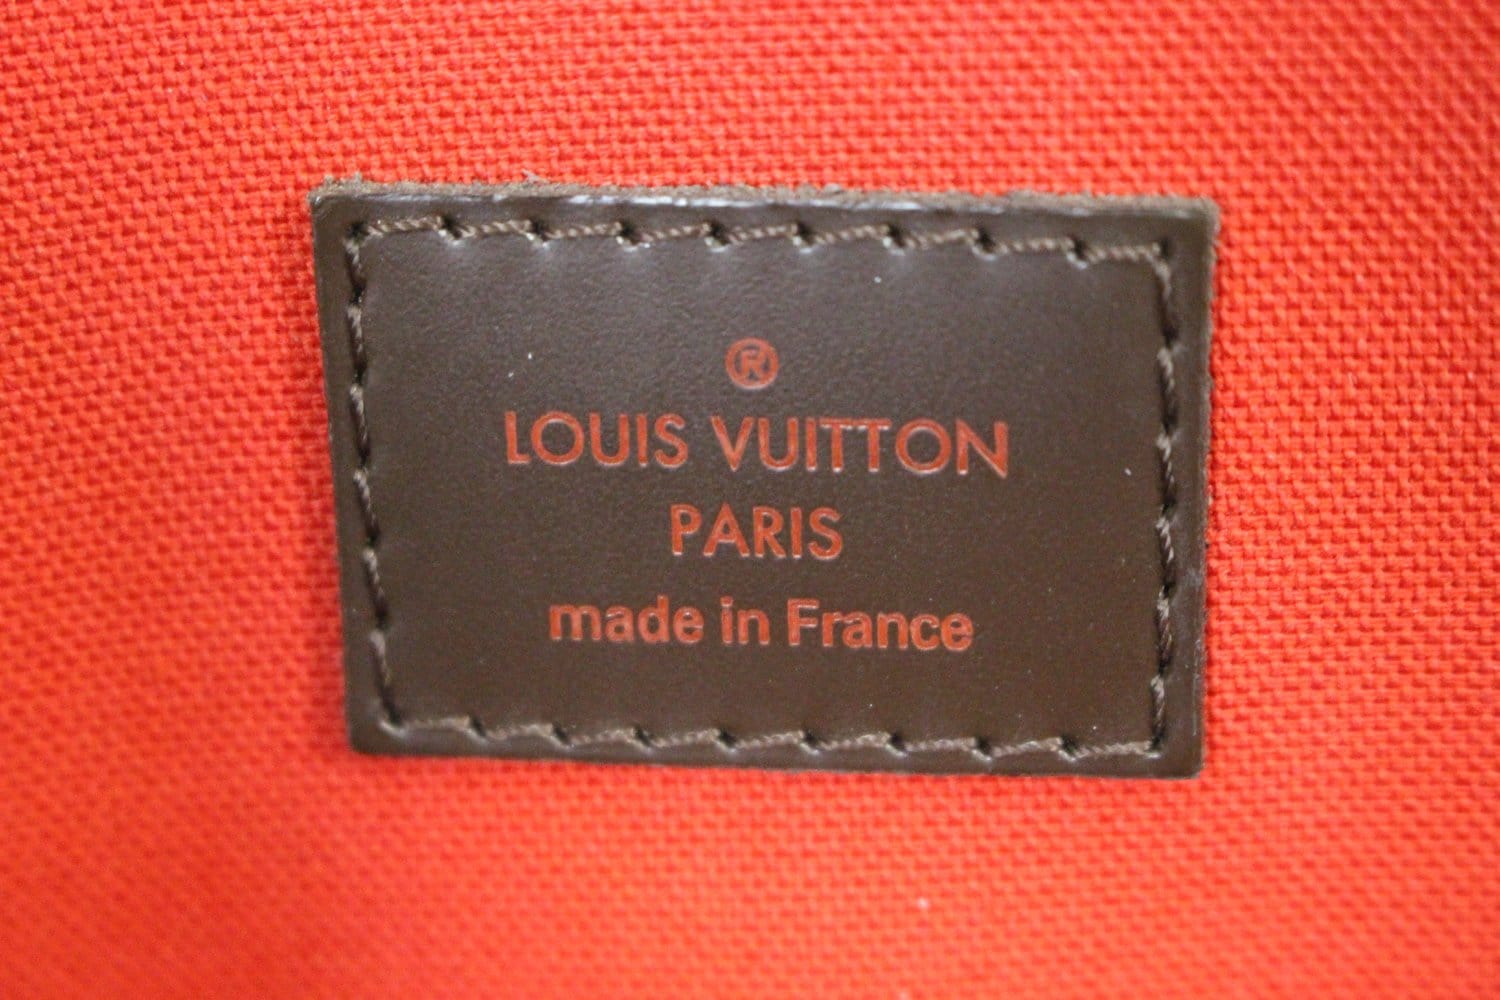 Authentic Louis Vuitton Verona Shoulder Bag GM Brown Canvas